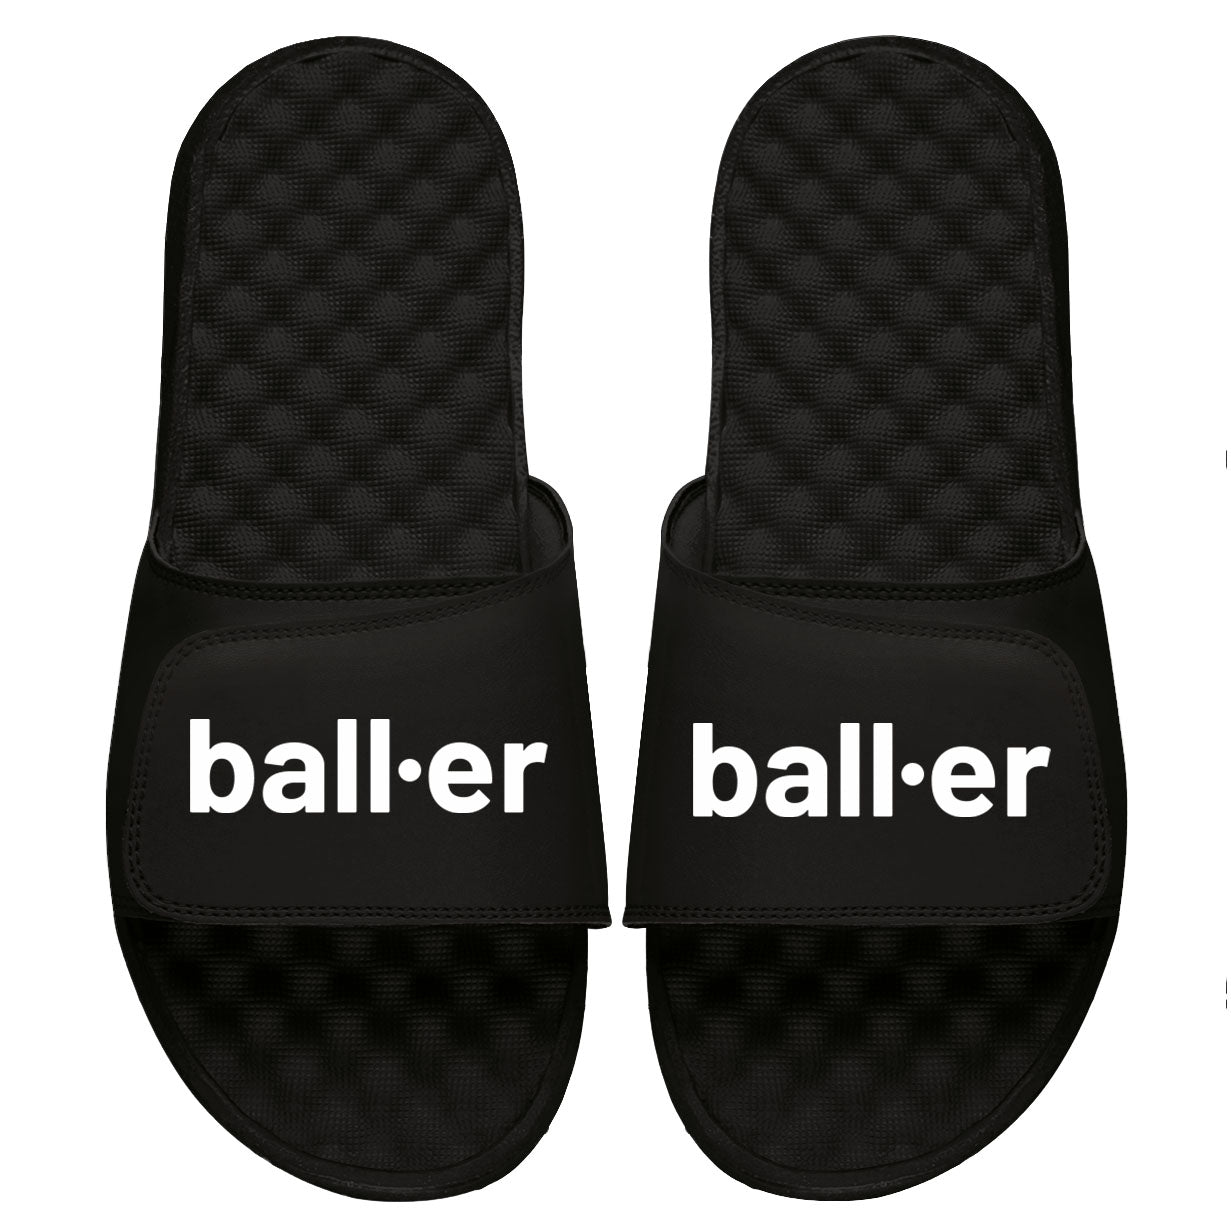 BALL-ER Slides